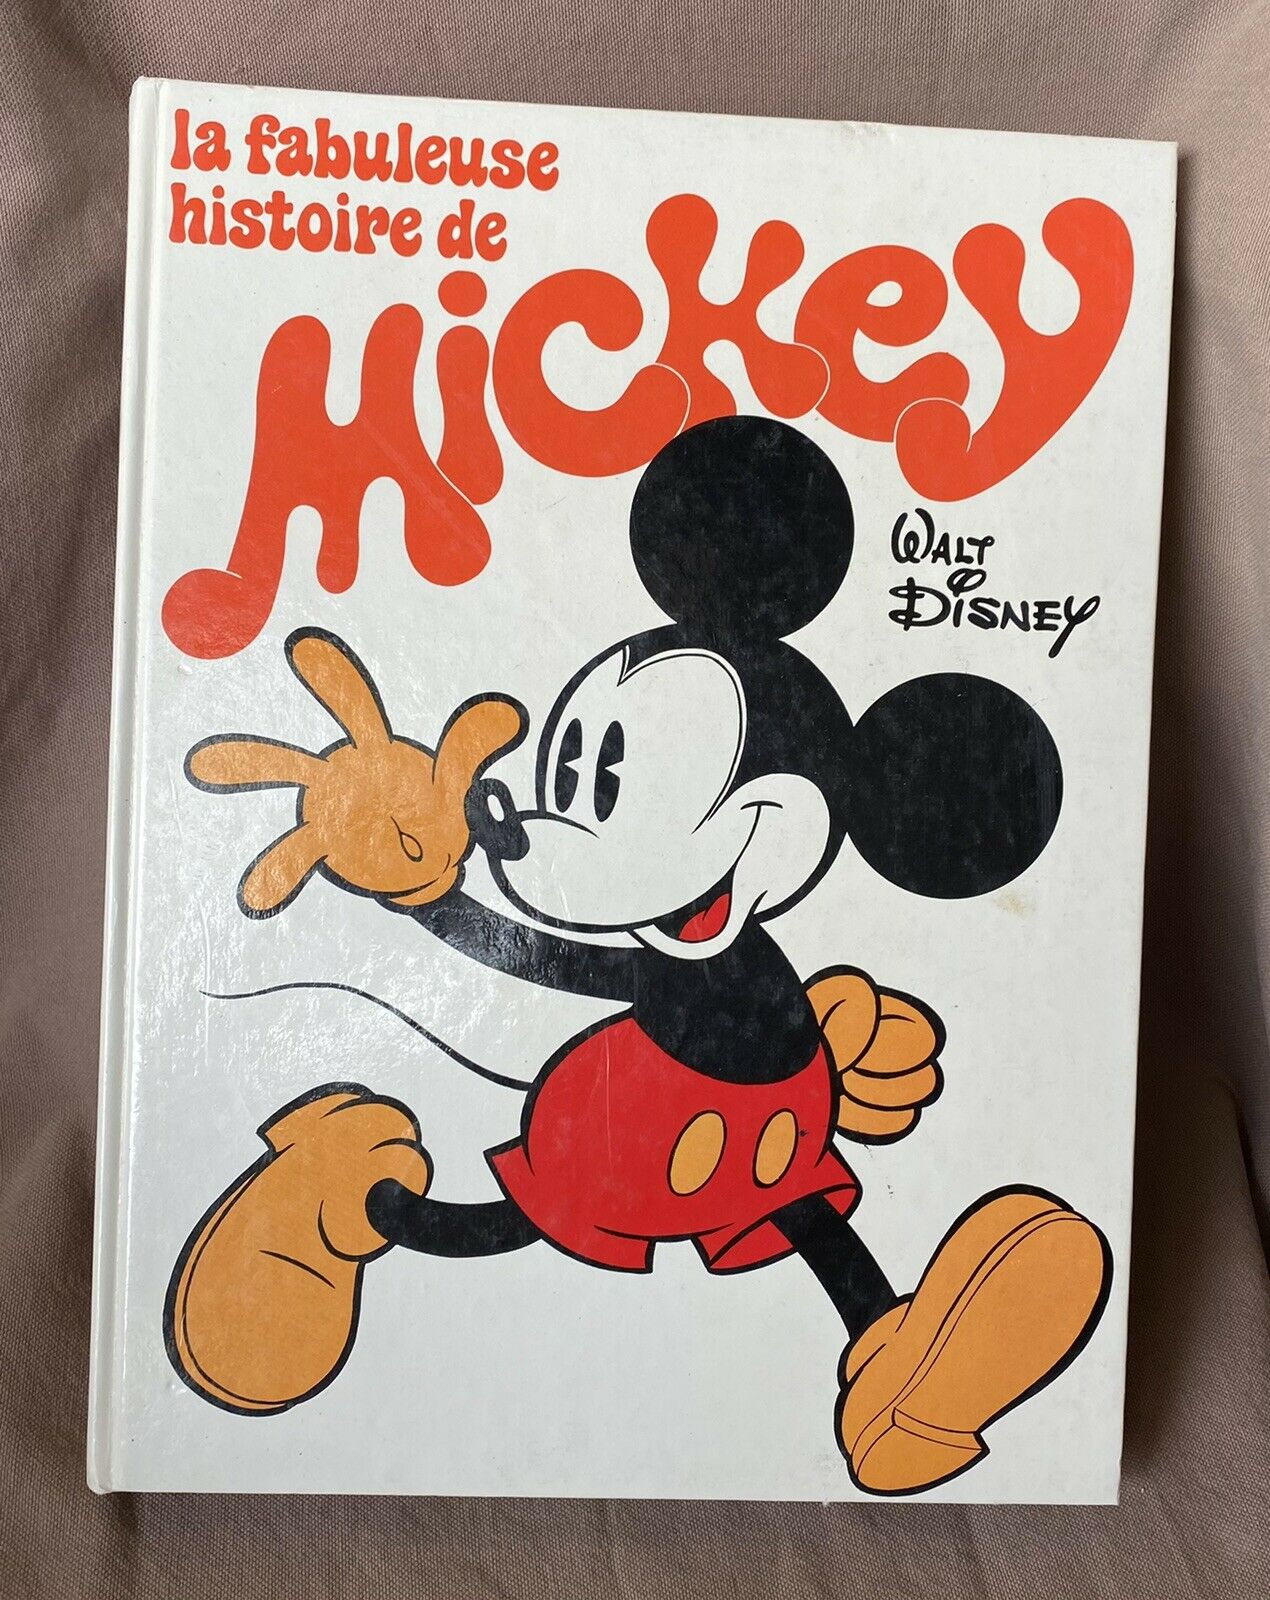 Featured image for “La fabuleuse histoire de mickey / Le livre de Paris / Walt Disney”